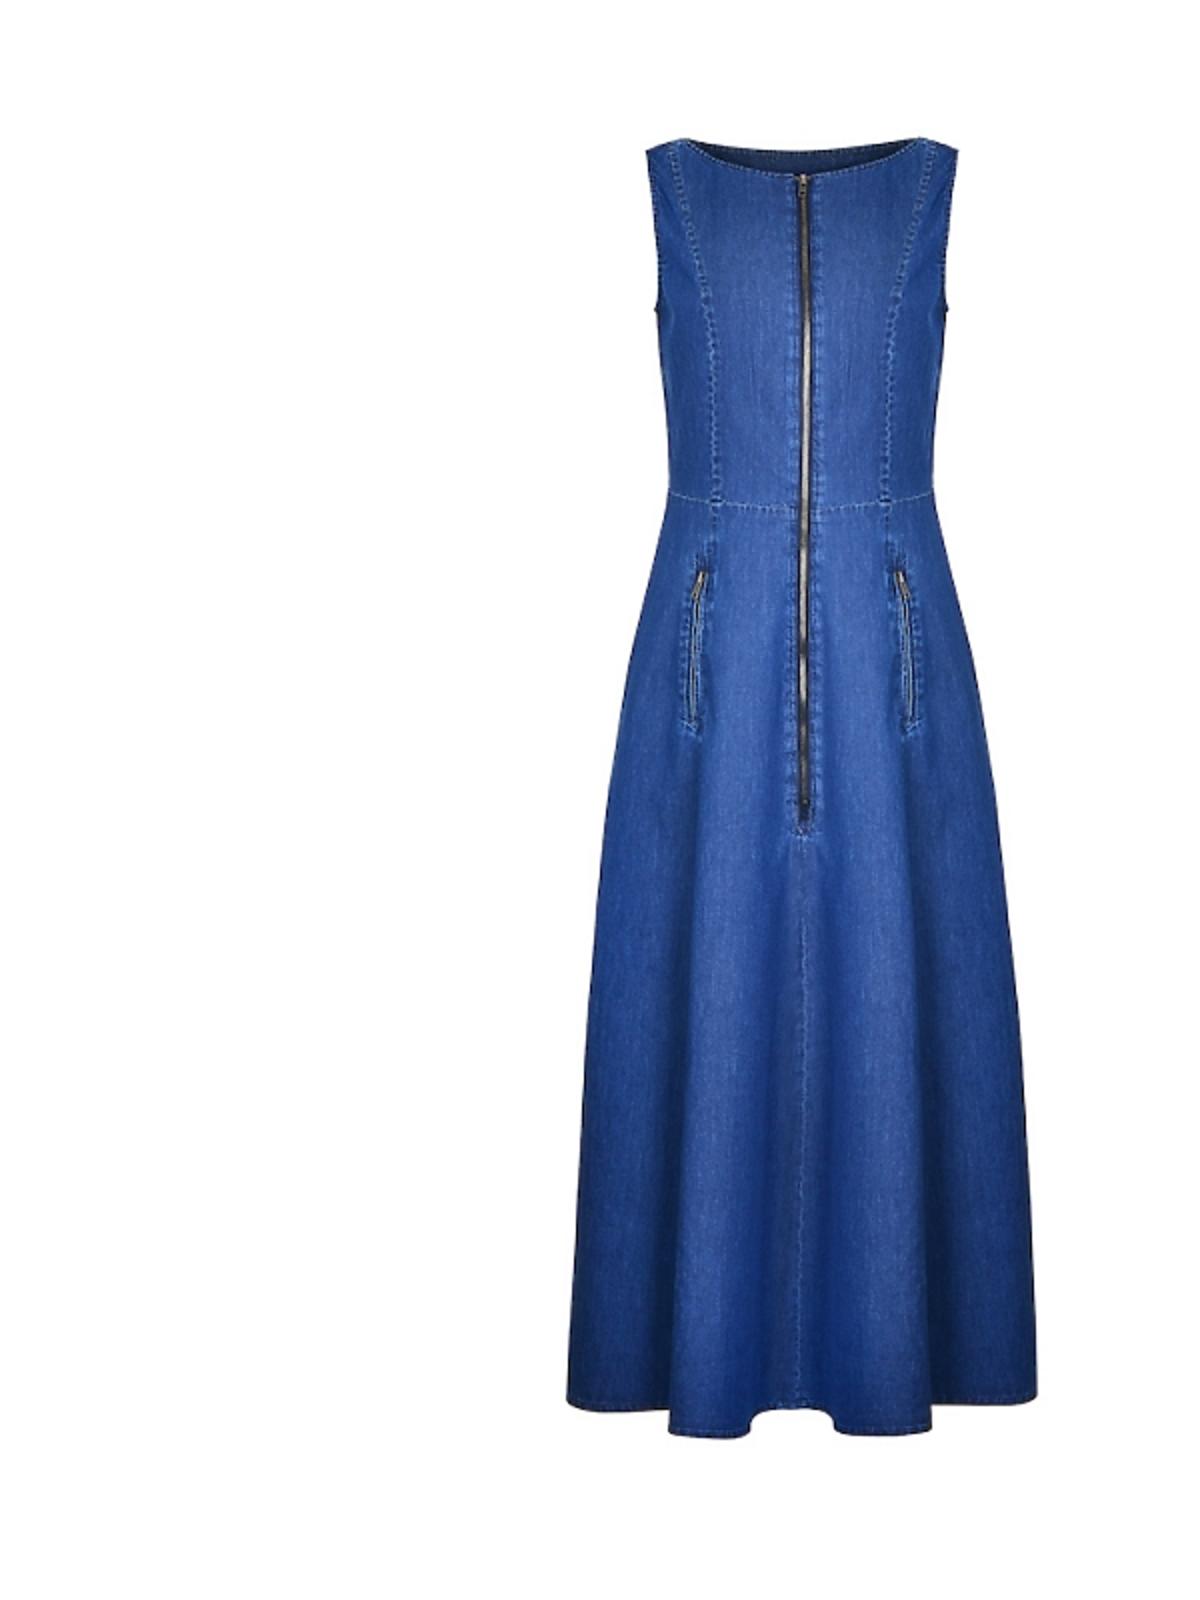 Niebieska, dżinsowa sukienka